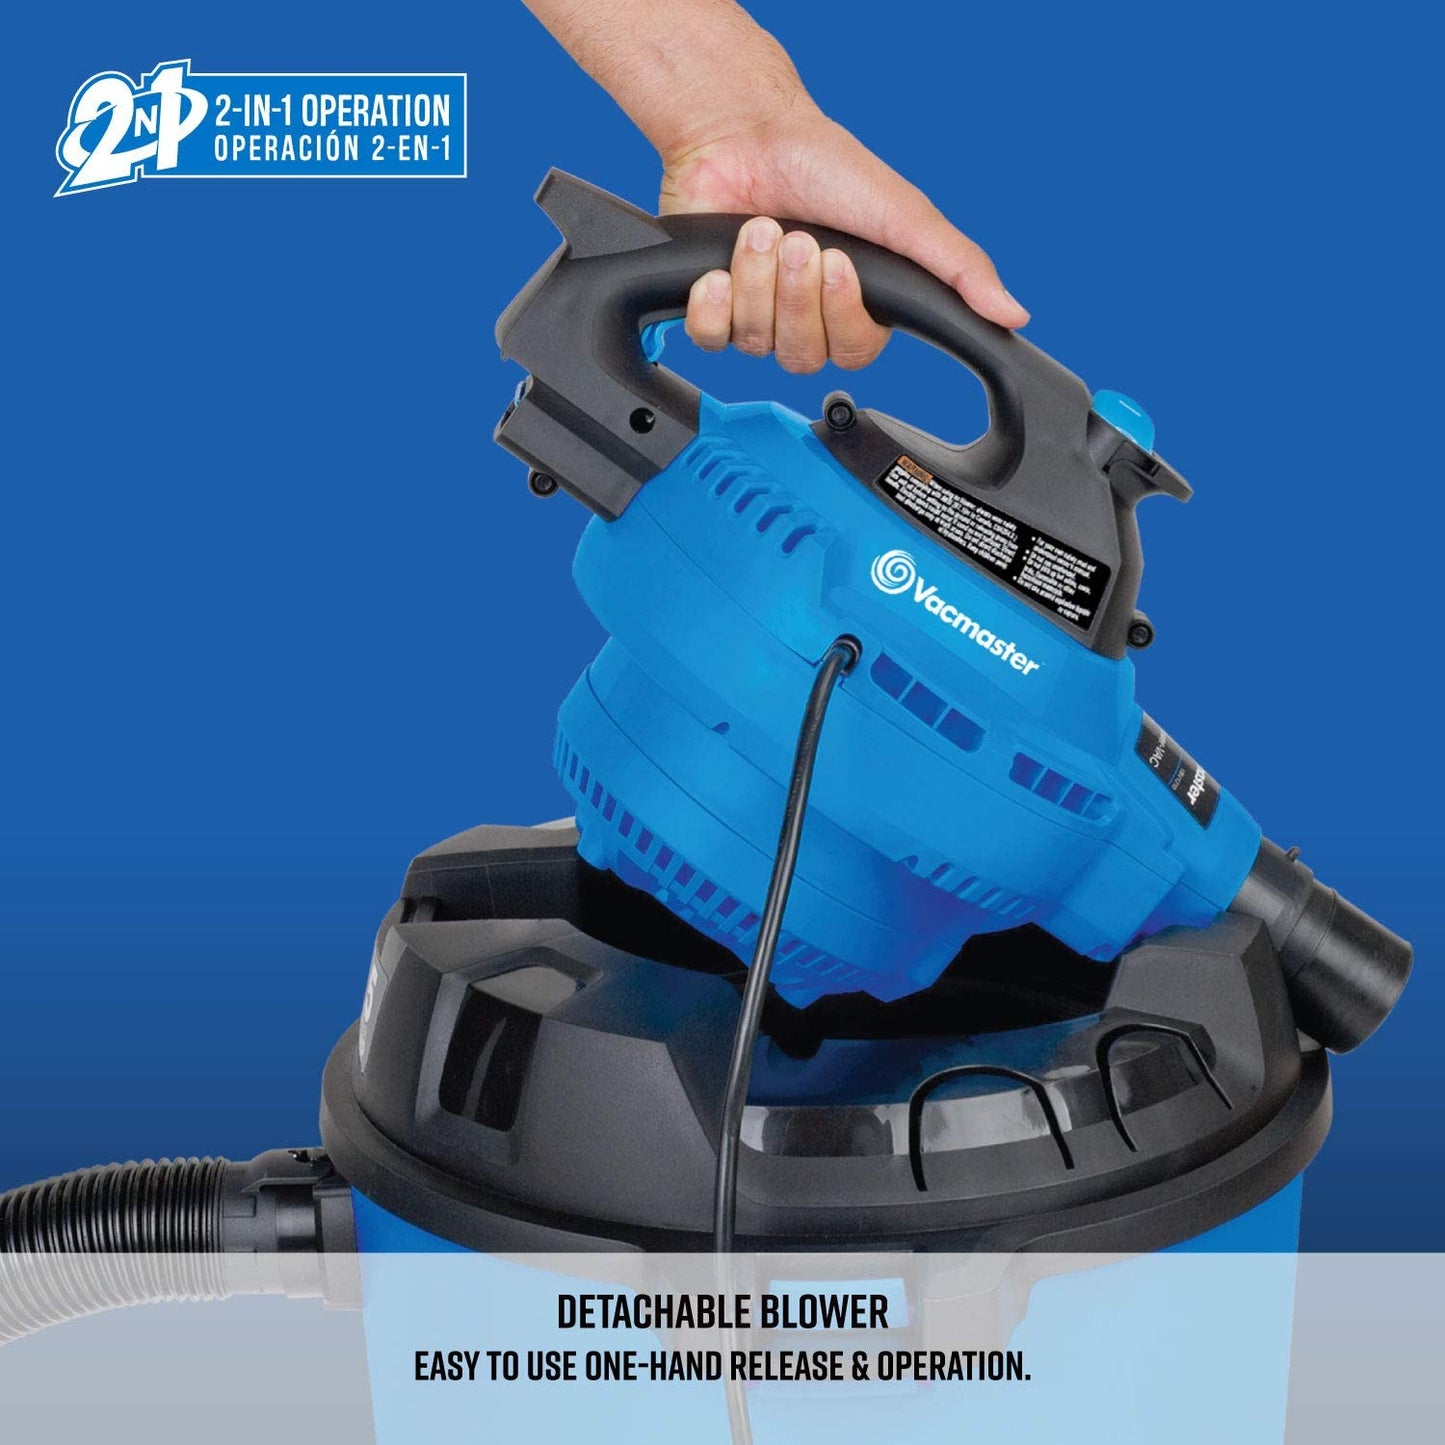 12-Gallon* 5 Peak HP** Wet/Dry Shop Vacuum with Detachable Blower, Blue